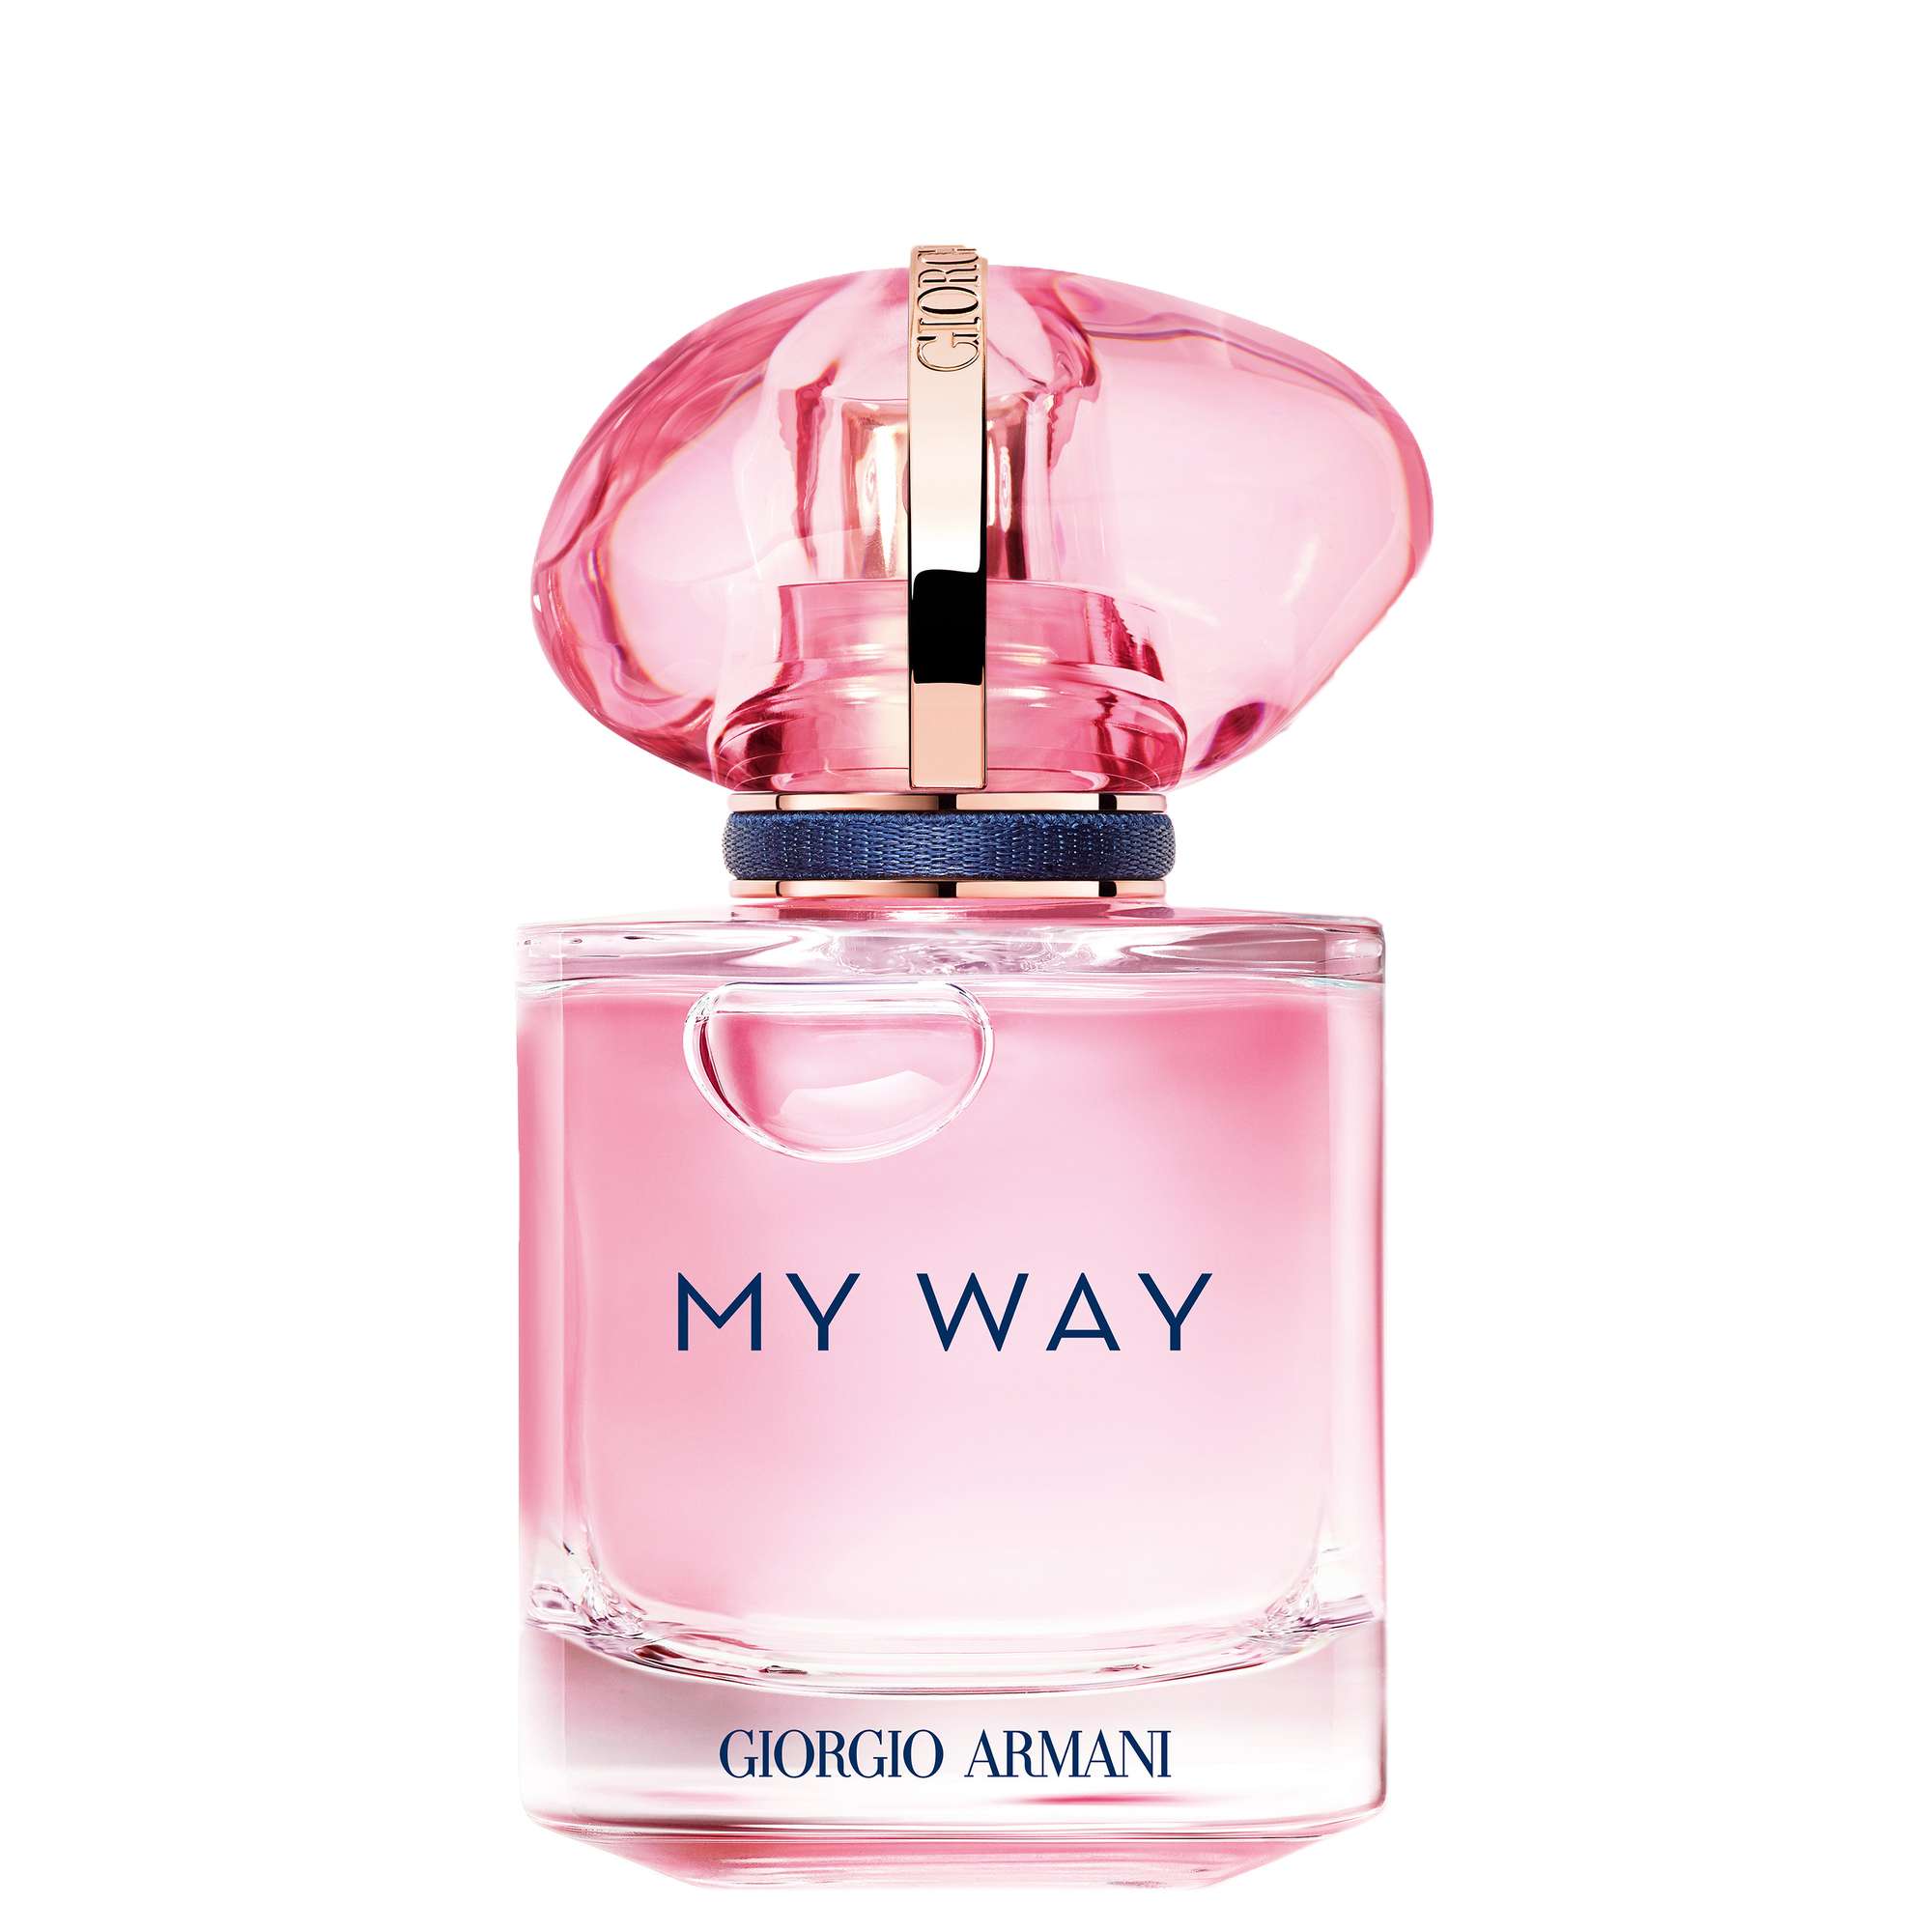 Photos - Women's Fragrance Armani My Way Nectar Eau de Parfum Nectar Spray 30ml 